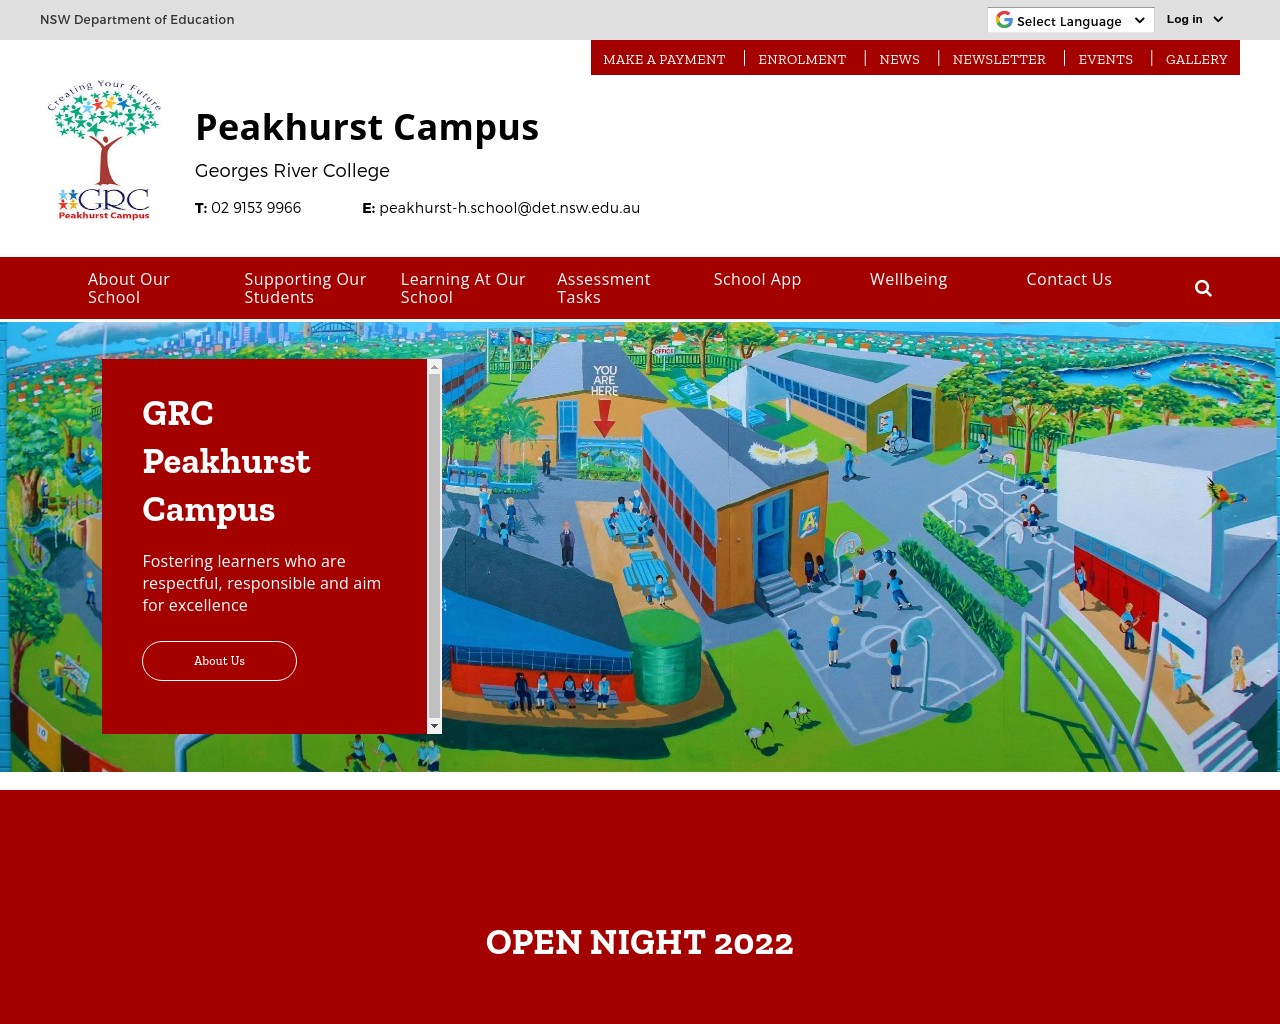 George River College Peakhurst Campus